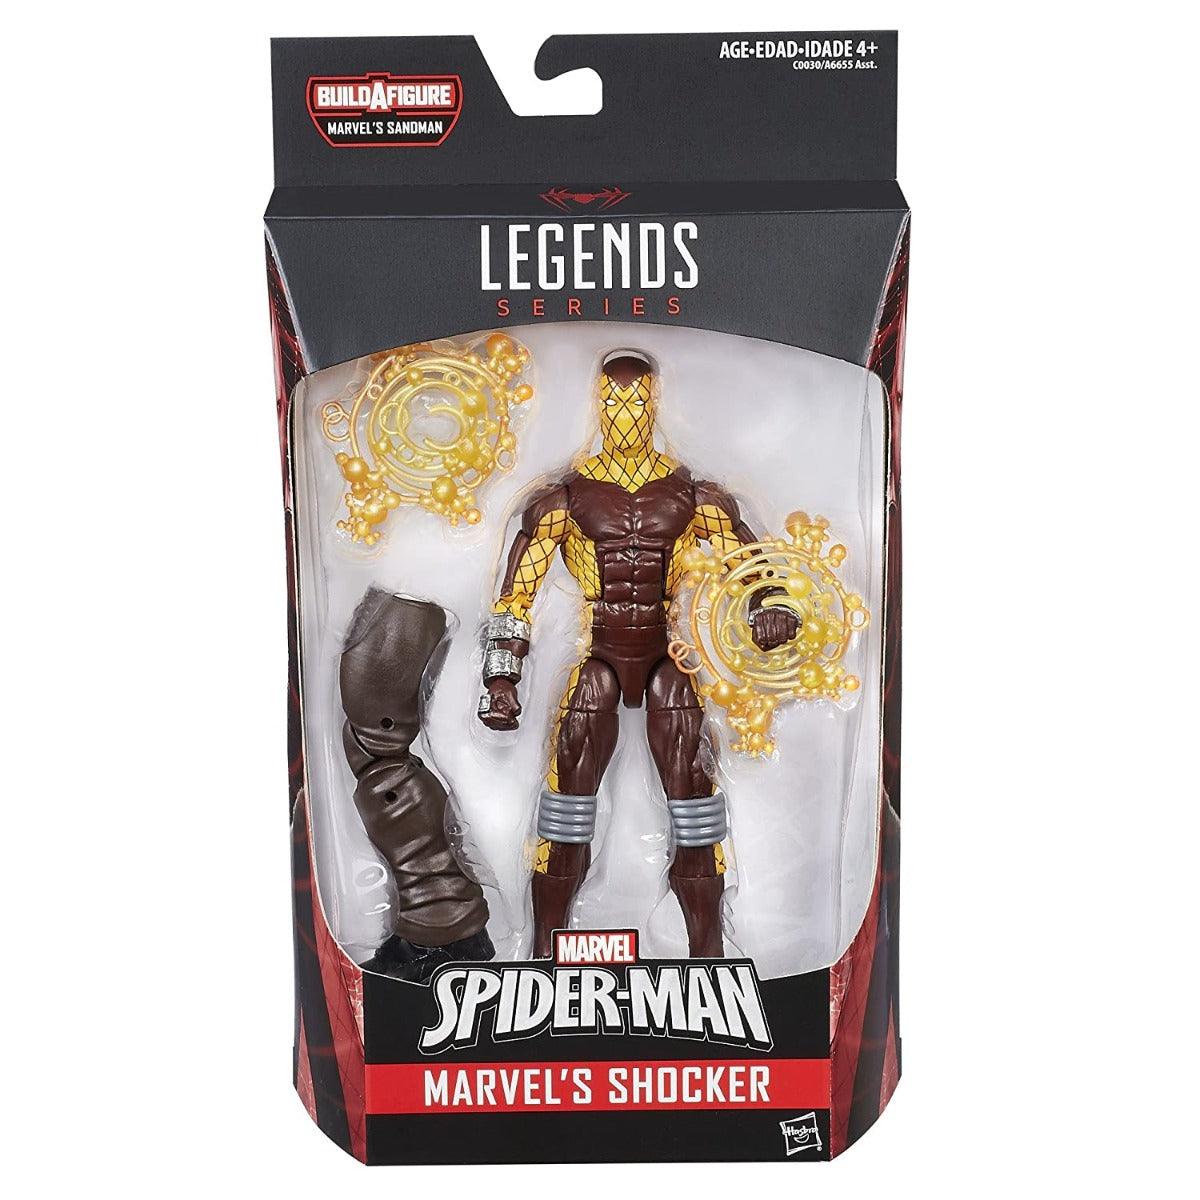 Marvel Legends Spider-Man 6-inch Legends Series Marvel's Shocker